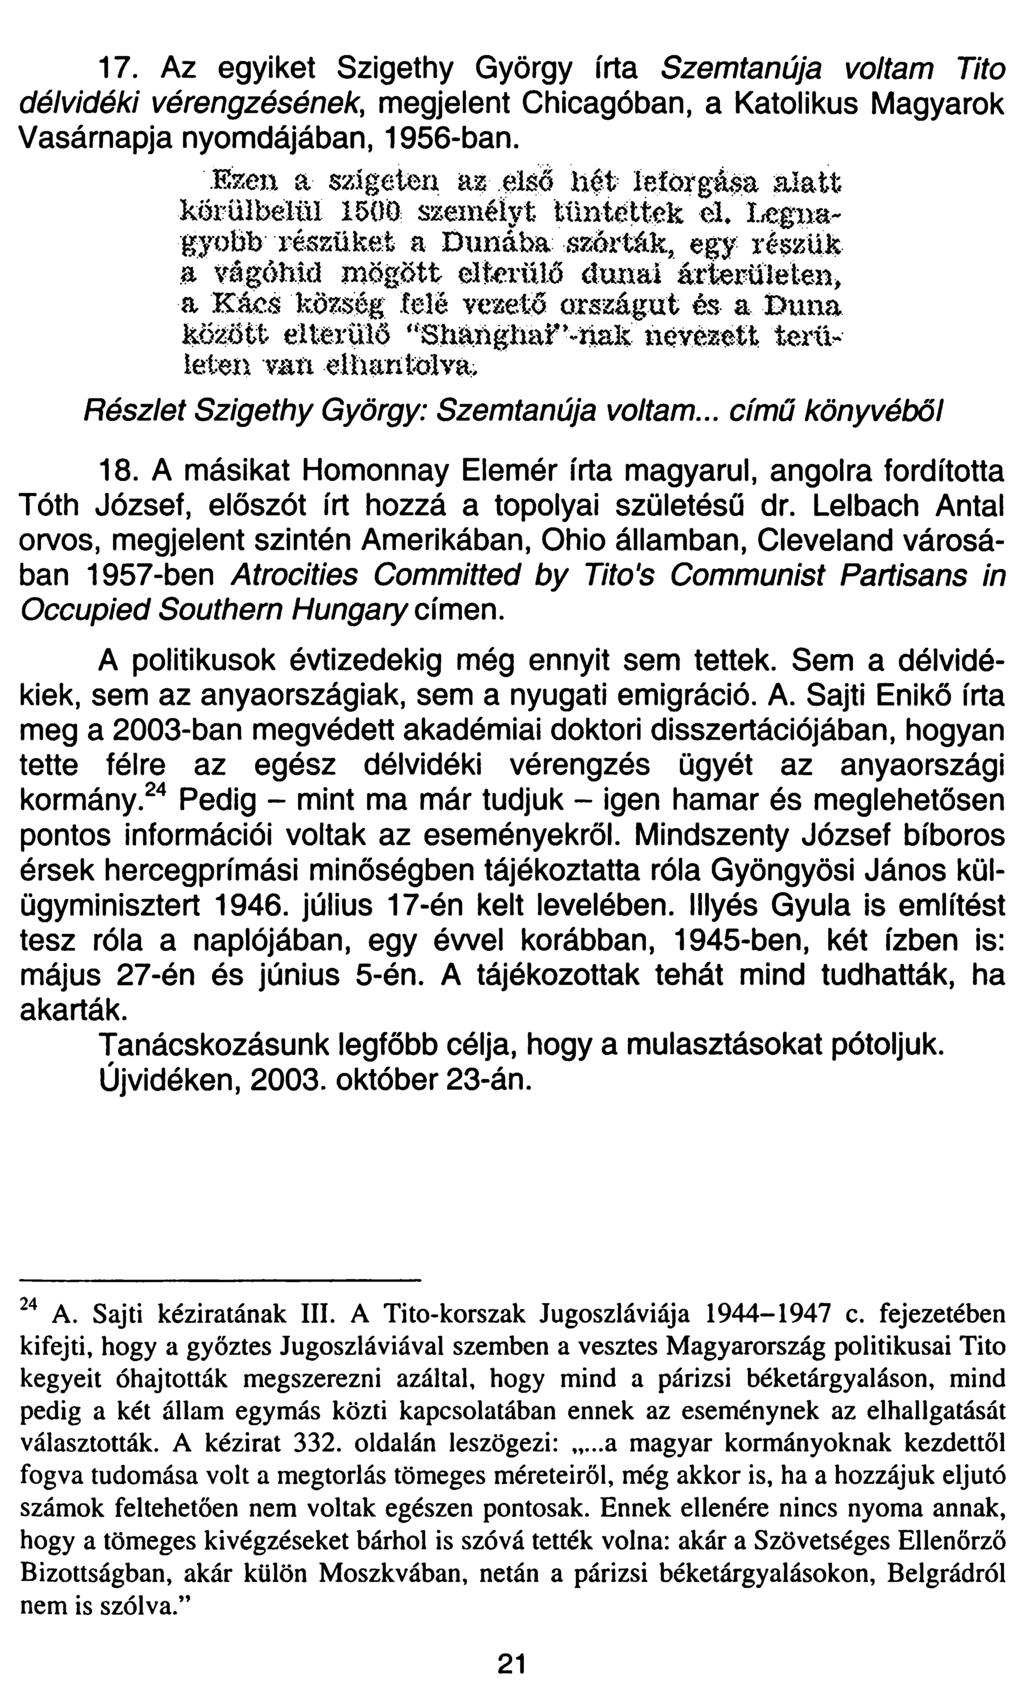 17. Az egyiket Szigethy György írta Szemtanúja voltam Tito délvidéki vérengzésének, megjelent Chicagóban, a Katolikus Magyarok Vasárnapja nyomdájában, 1956-ban.